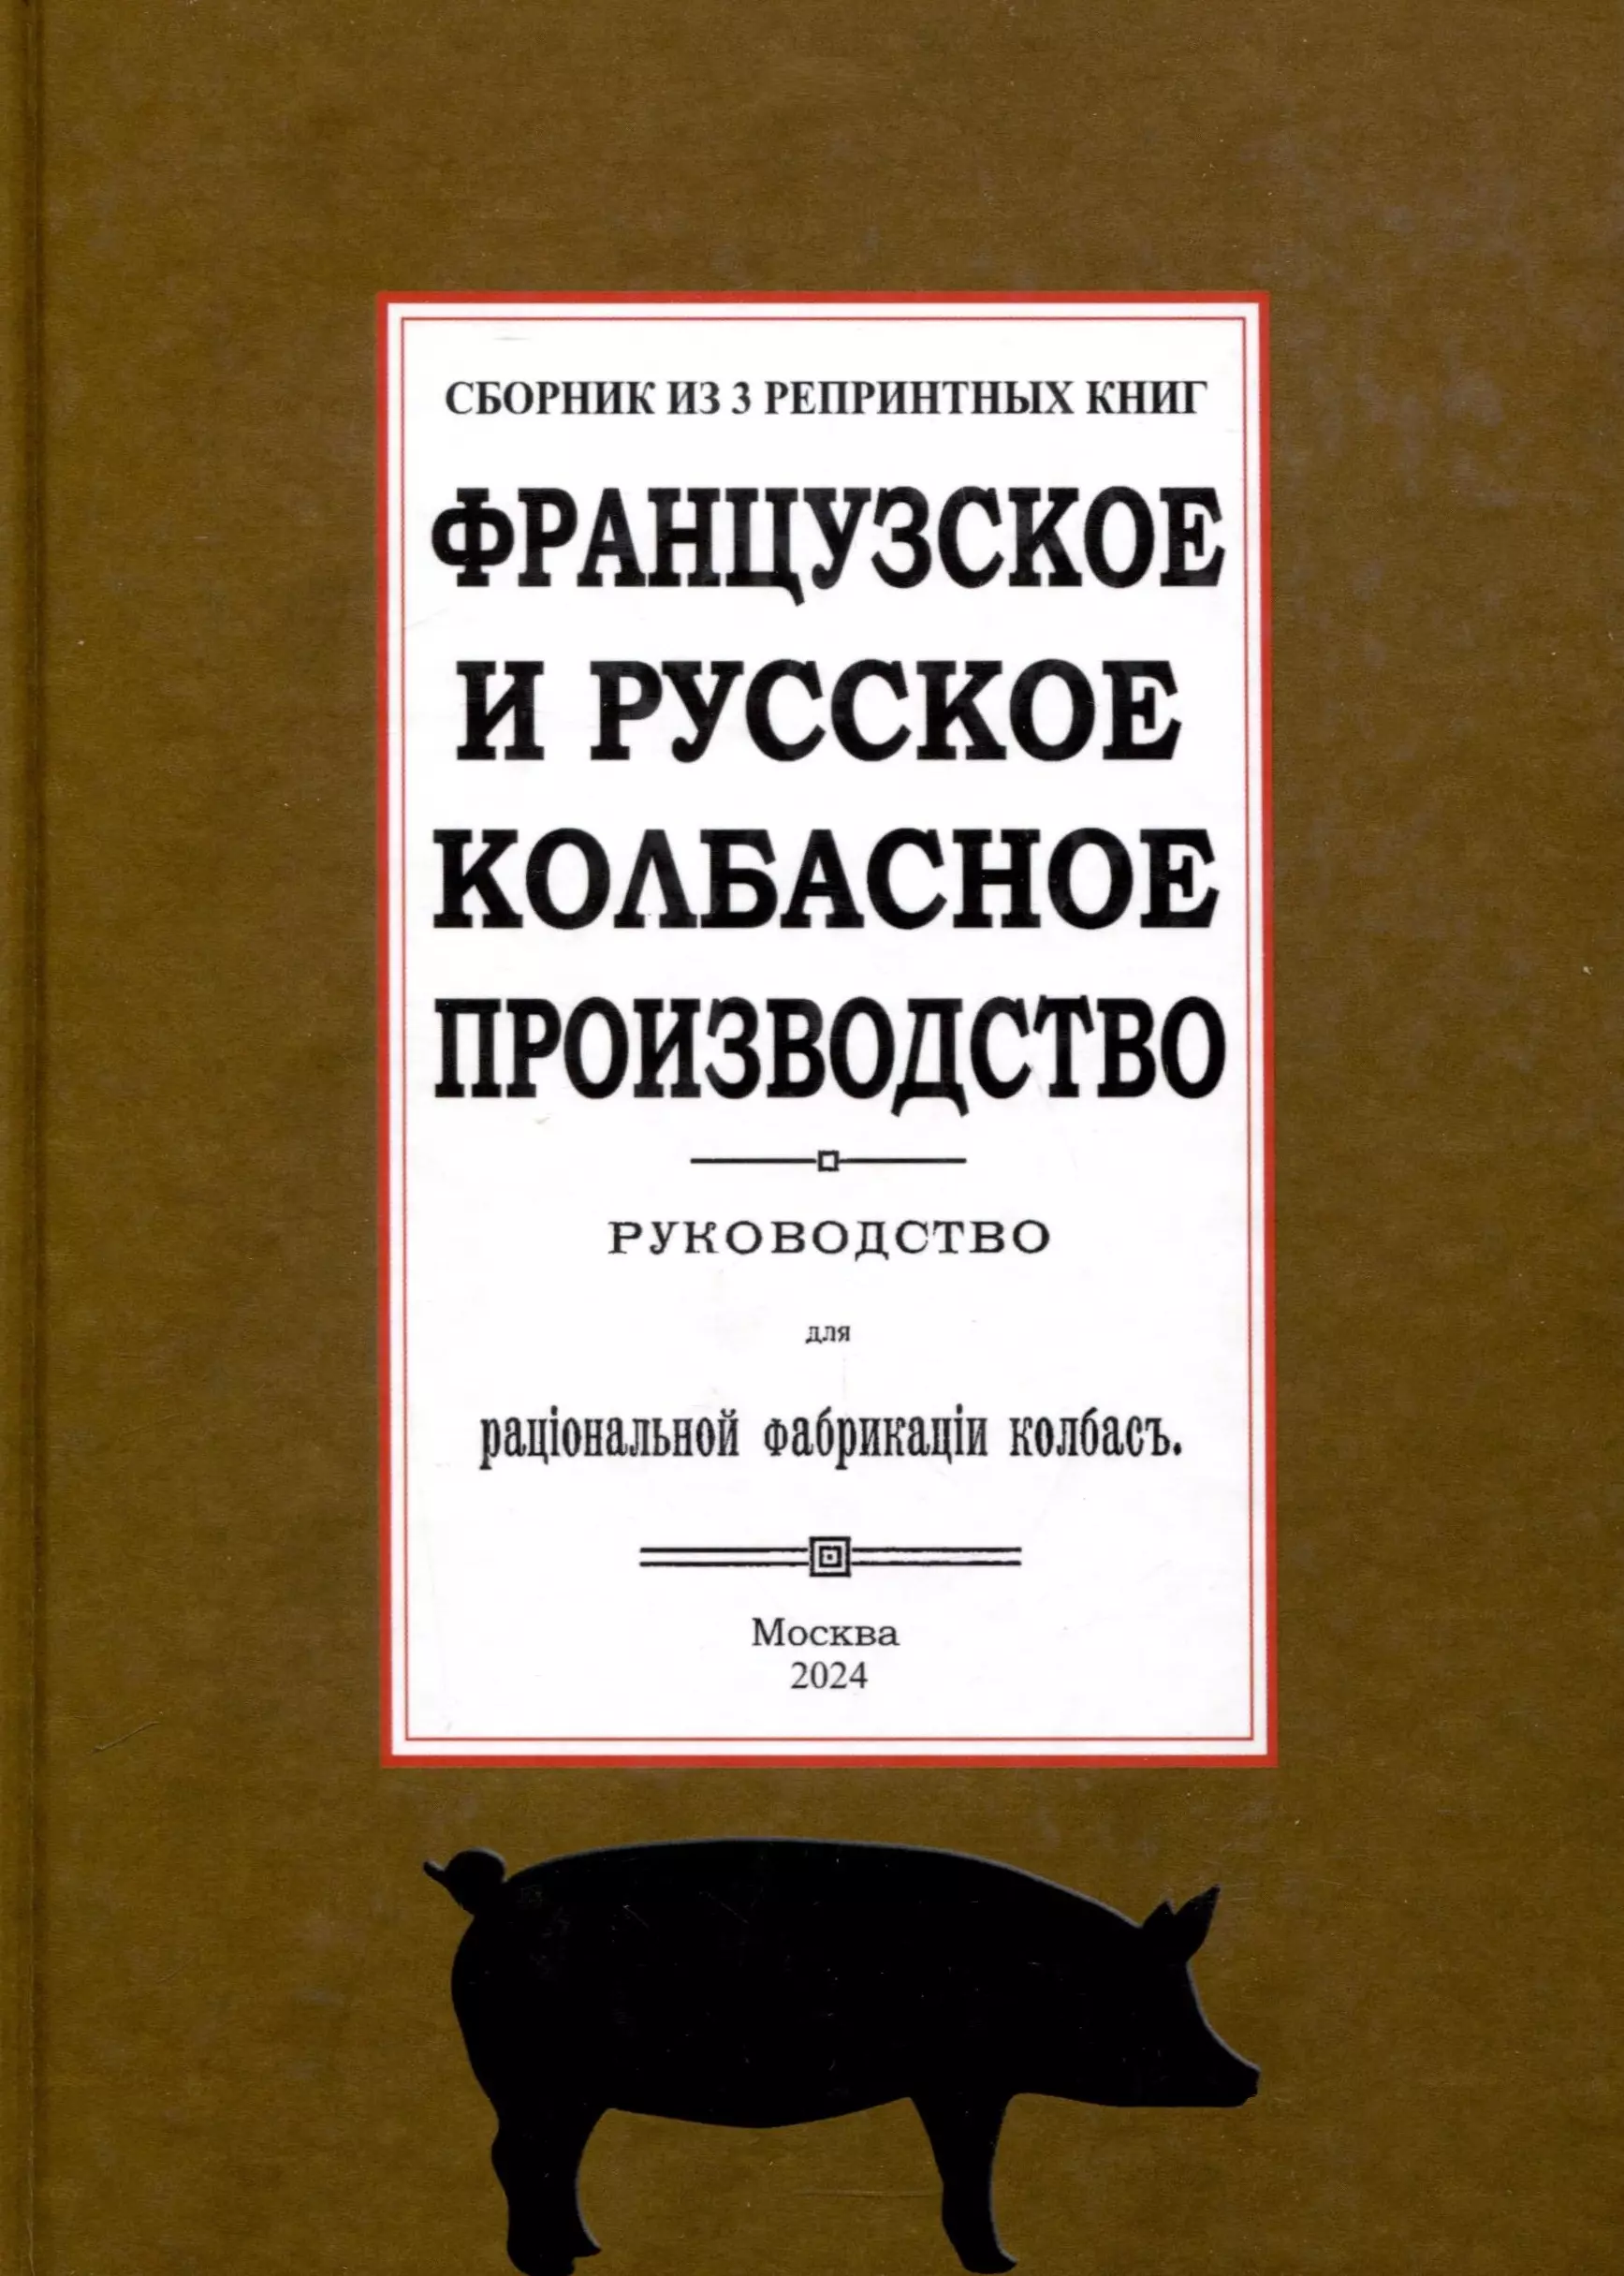 Мороховцев К. К. Французское и русское колбасное производство (сборник 3 репринтных книг)